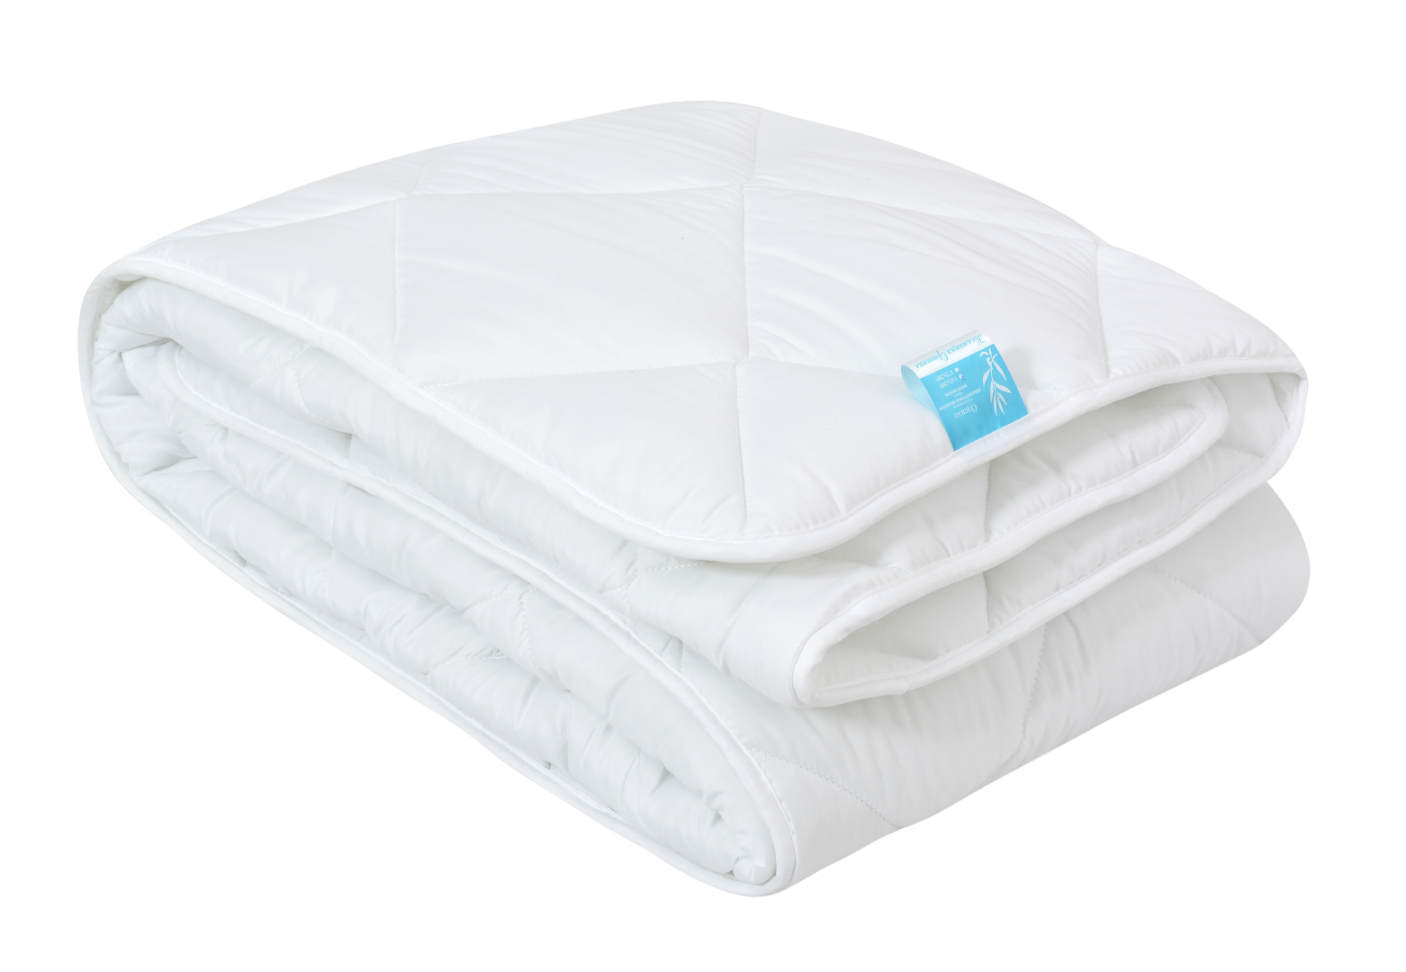 Одеяло Эвкалипт 1,5-спальное 150 г/м2, микрофибра